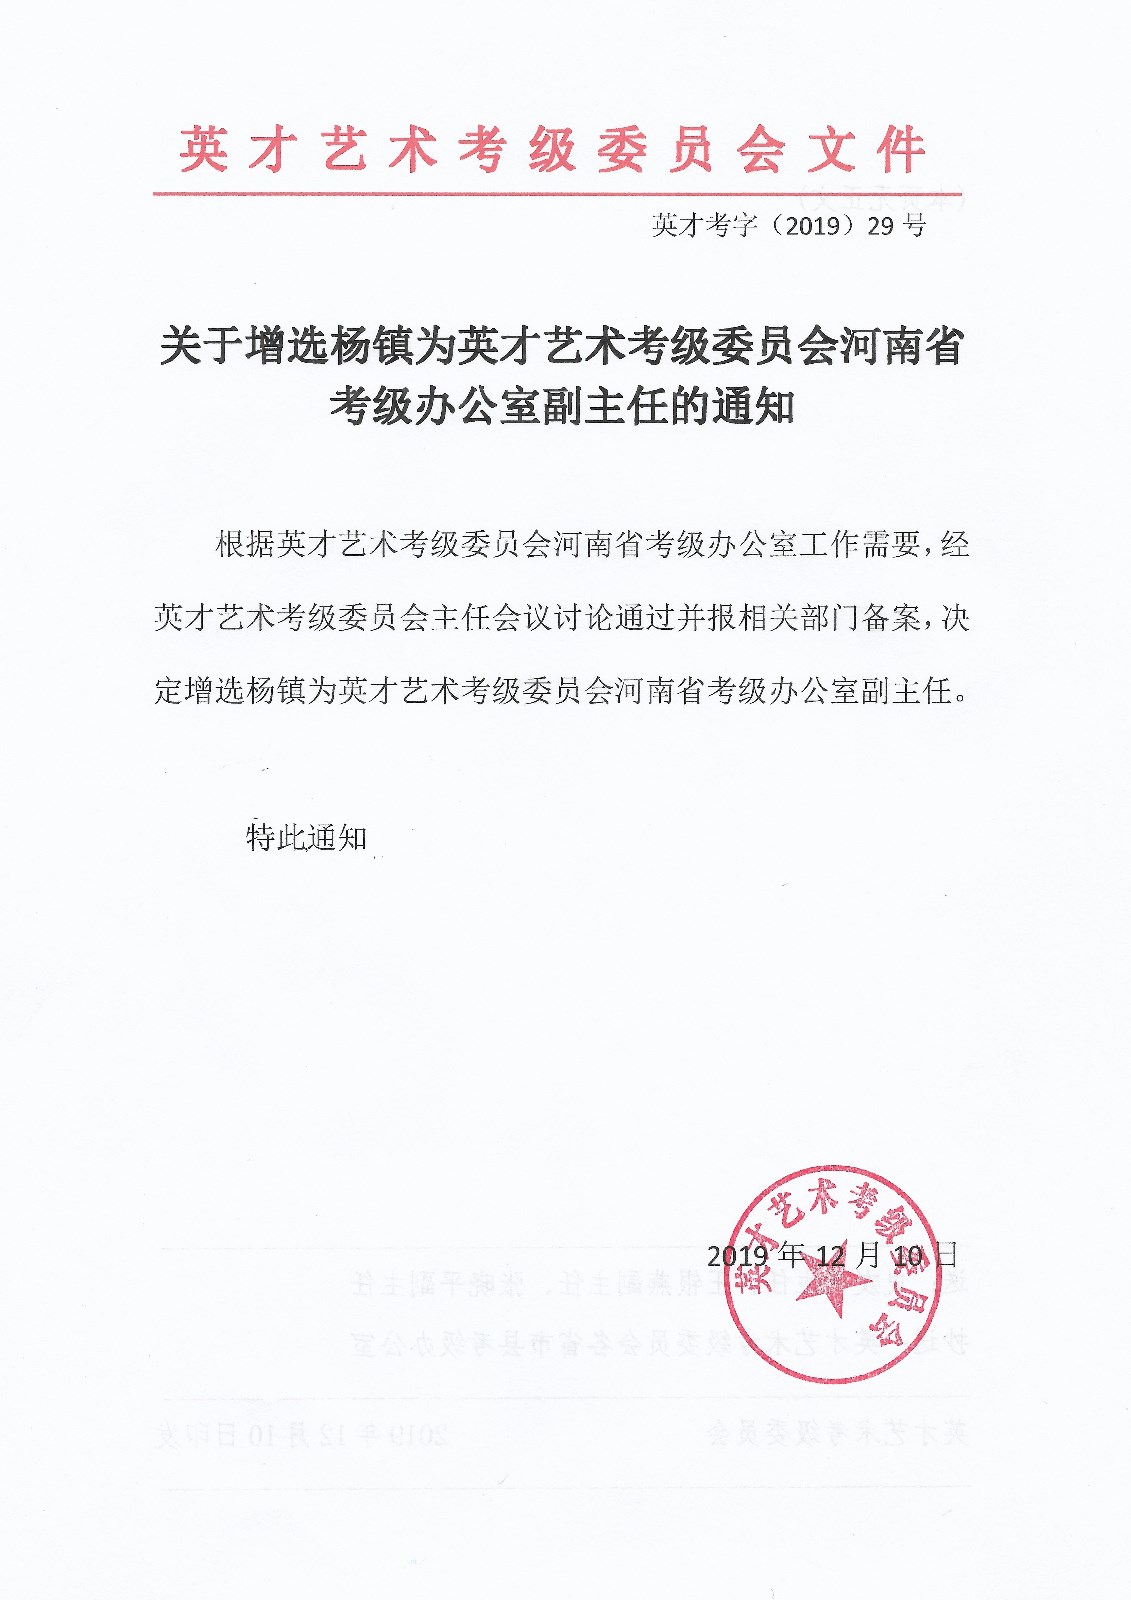 关于增选杨镇为英才艺术考级委员会河南省考级办公室副主任的通知